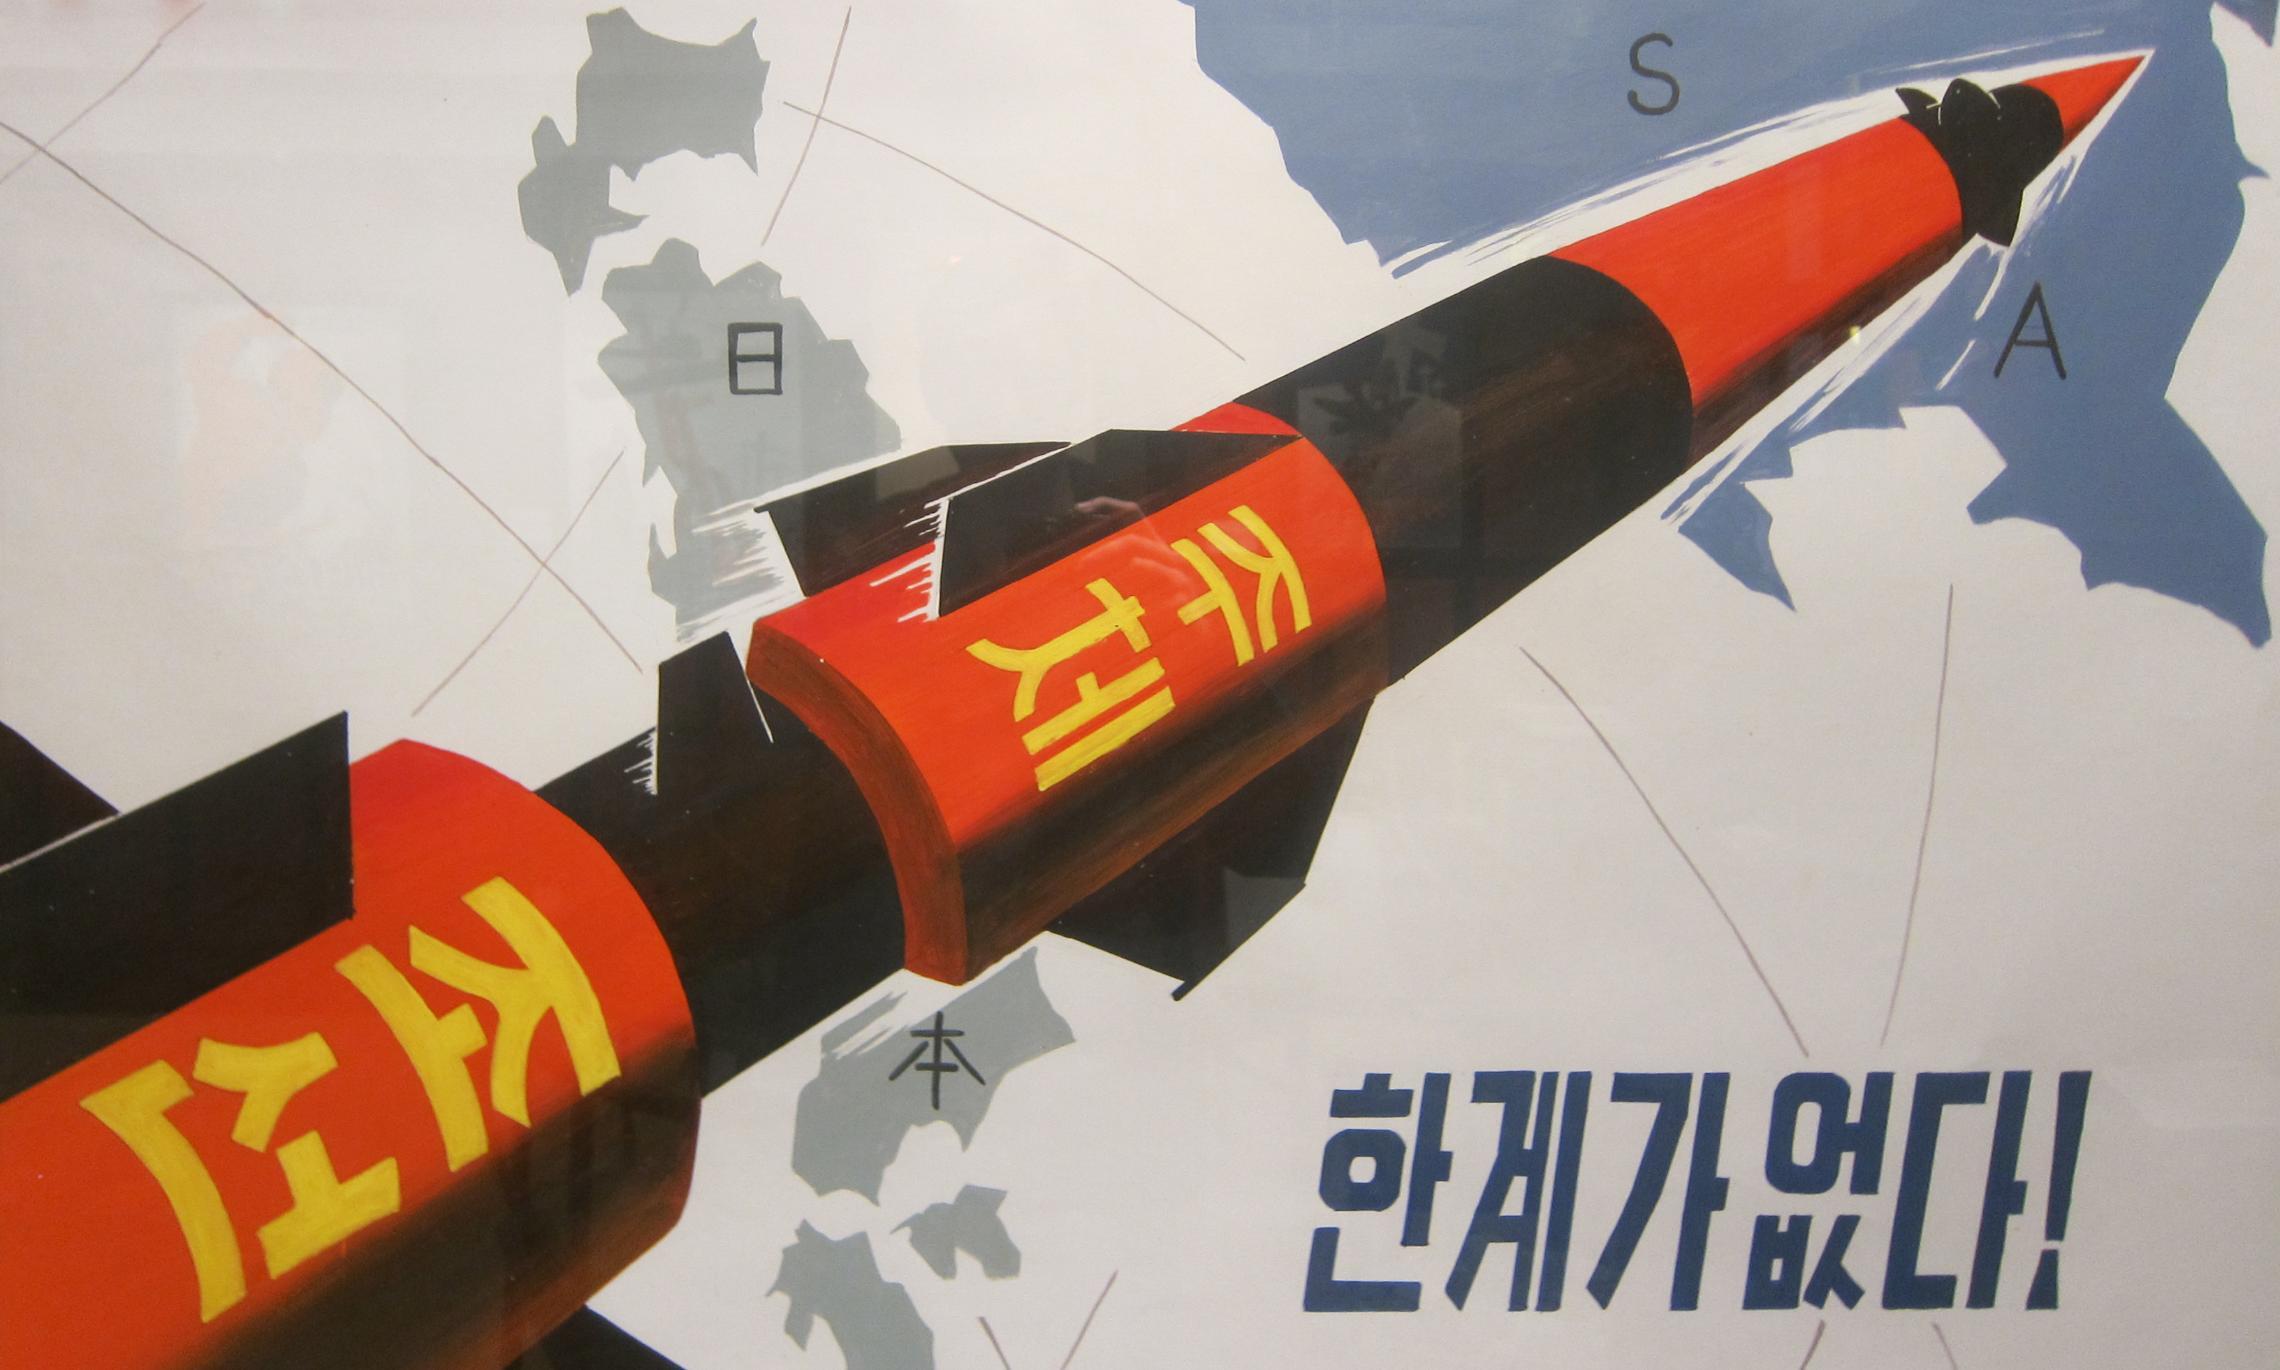 Пропагандистский постер: ракета, северокорейская направленная в сторону Японии и США. Фото Tormod Sandtorv (CC BY-SA 2.0)